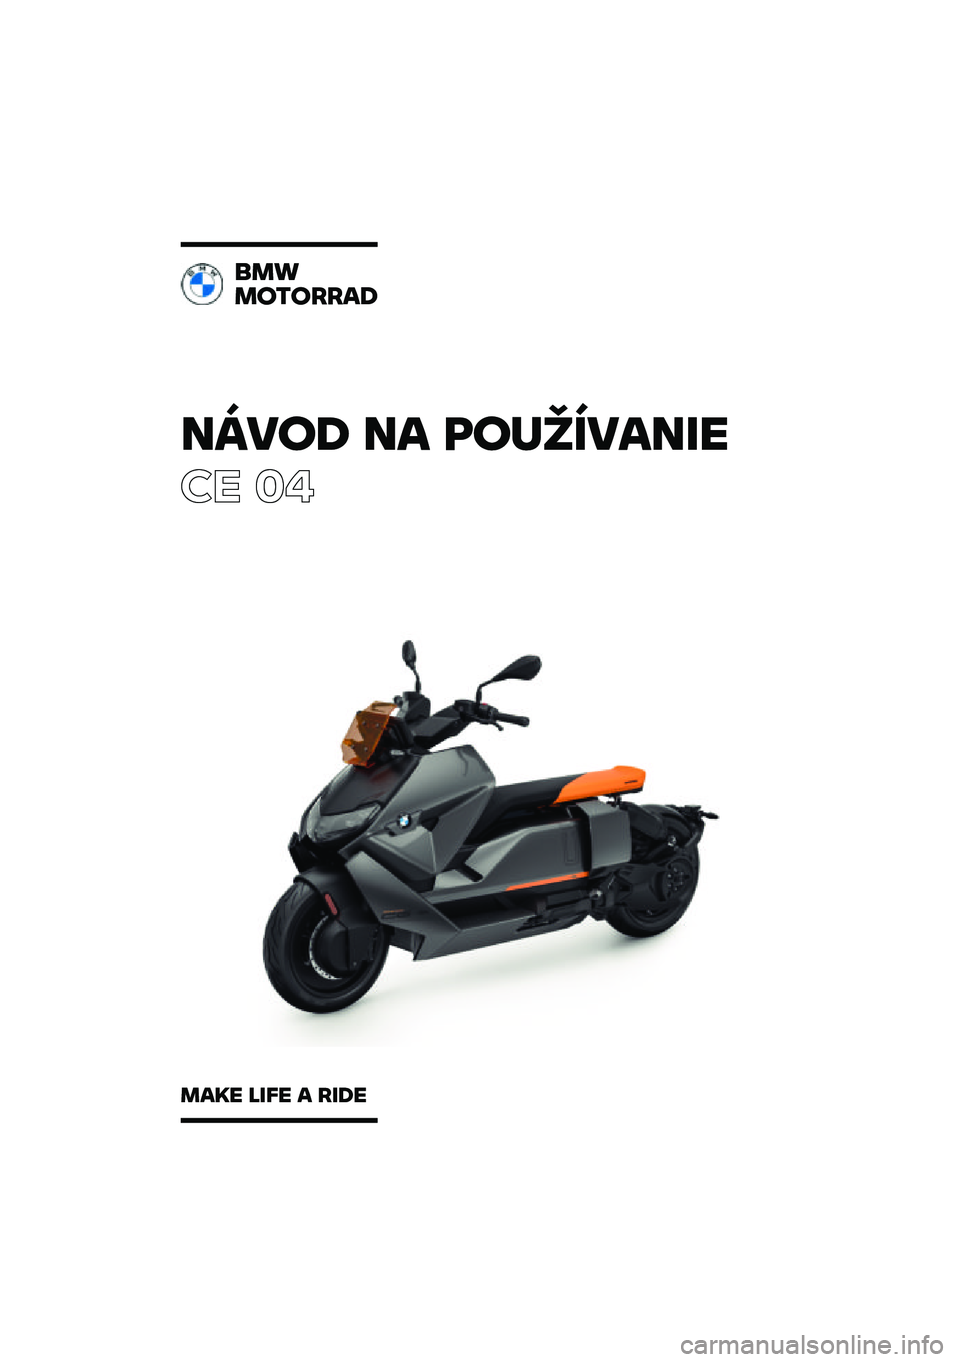 BMW MOTORRAD CE 04 2021  Návod na používanie (in Slovak) �����\b �� �	��
�������
�� ��
���
��������\b
���� ���� � ���\b� 